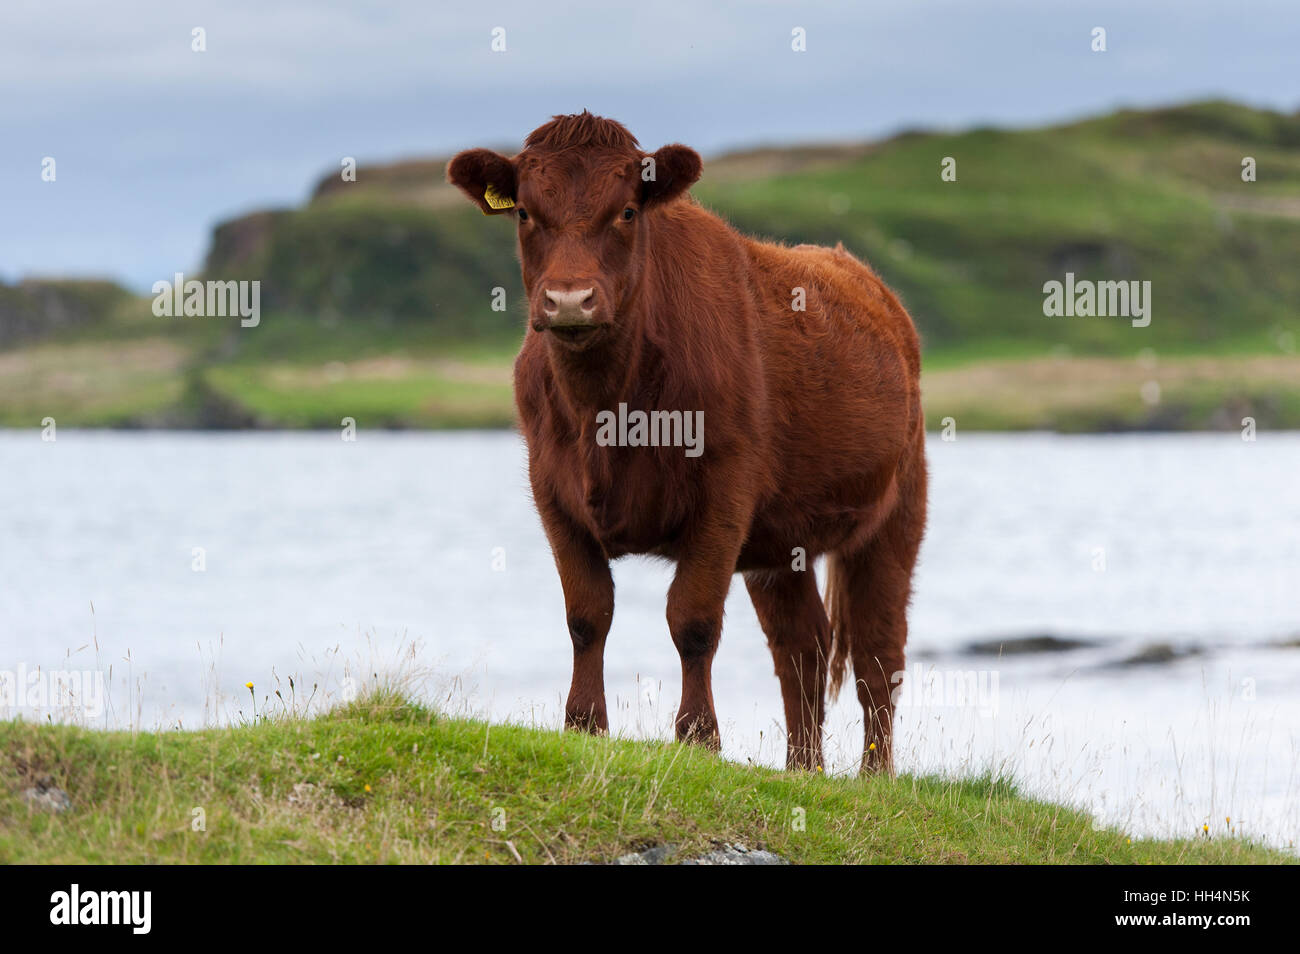 Luing Rinder, eine native britisches Rindfleisch Rasse auf ihre Heimat Insel Luing an der schottischen Westküste, UK. Stockfoto